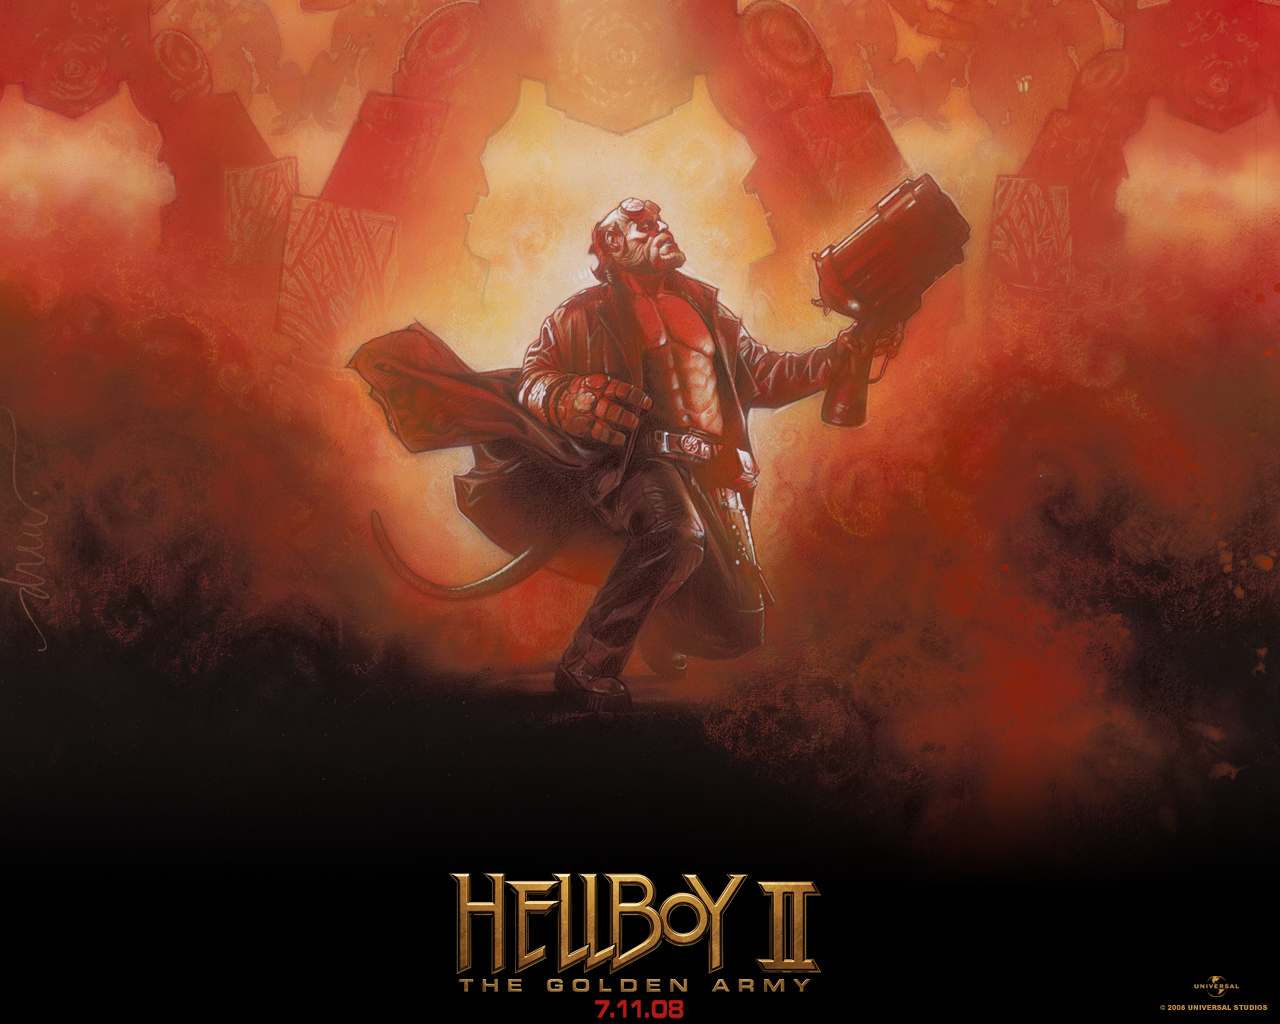 "Hellboy II" desktop wallpaper number 2 (1280 x 1024 pixels)